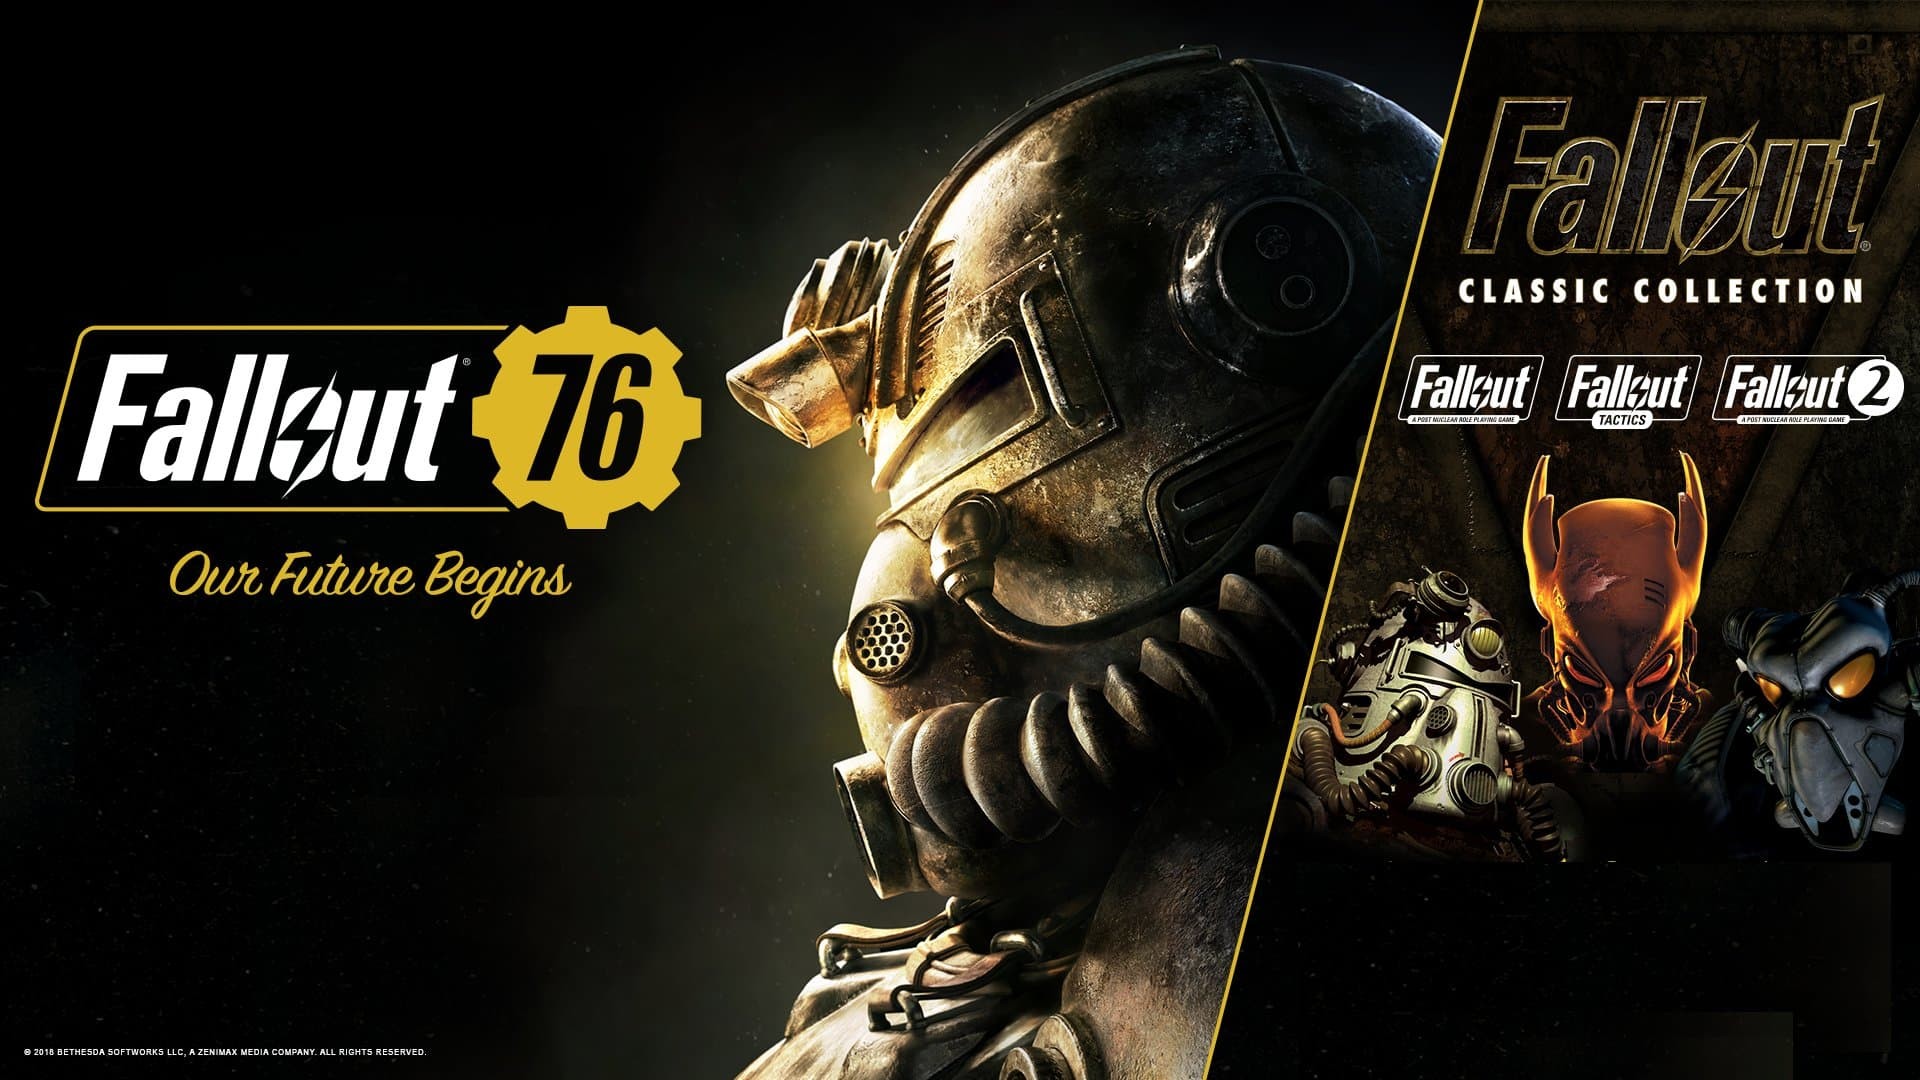 Fallout promozione titoli originali